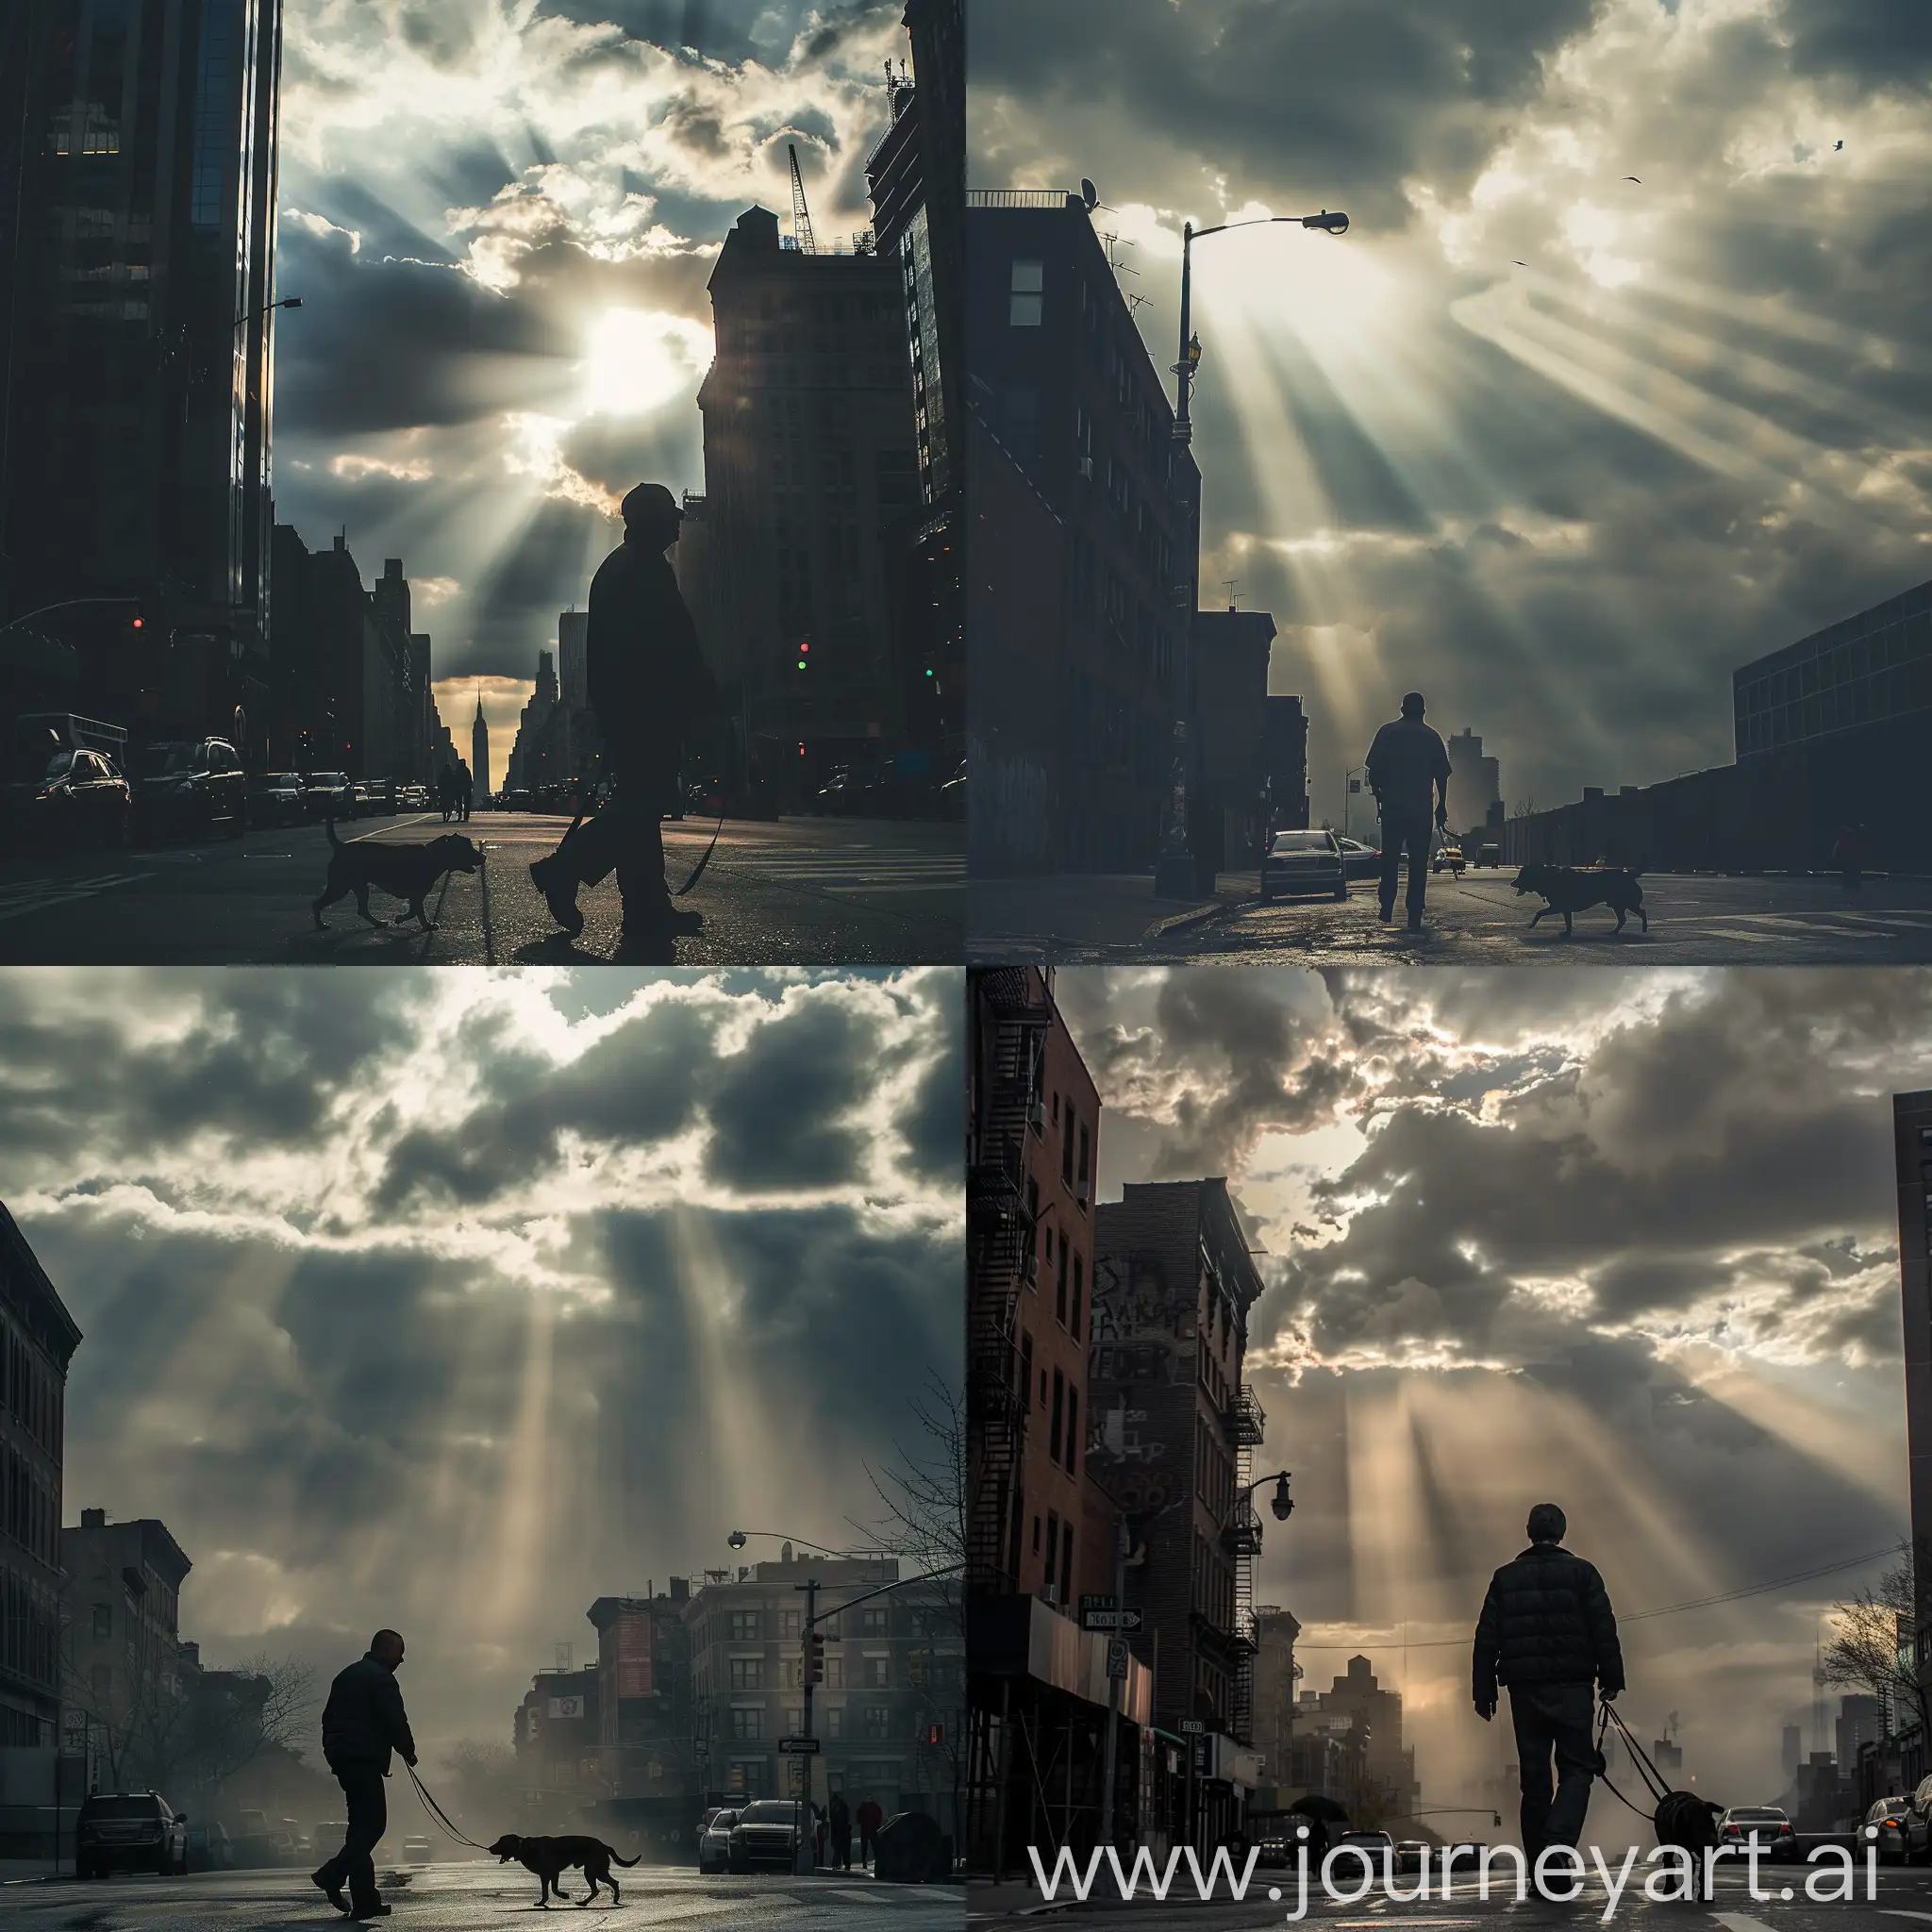 hombre paseando perro en calles ciudad, cielo nublado, rayo de sol desd lado derecho